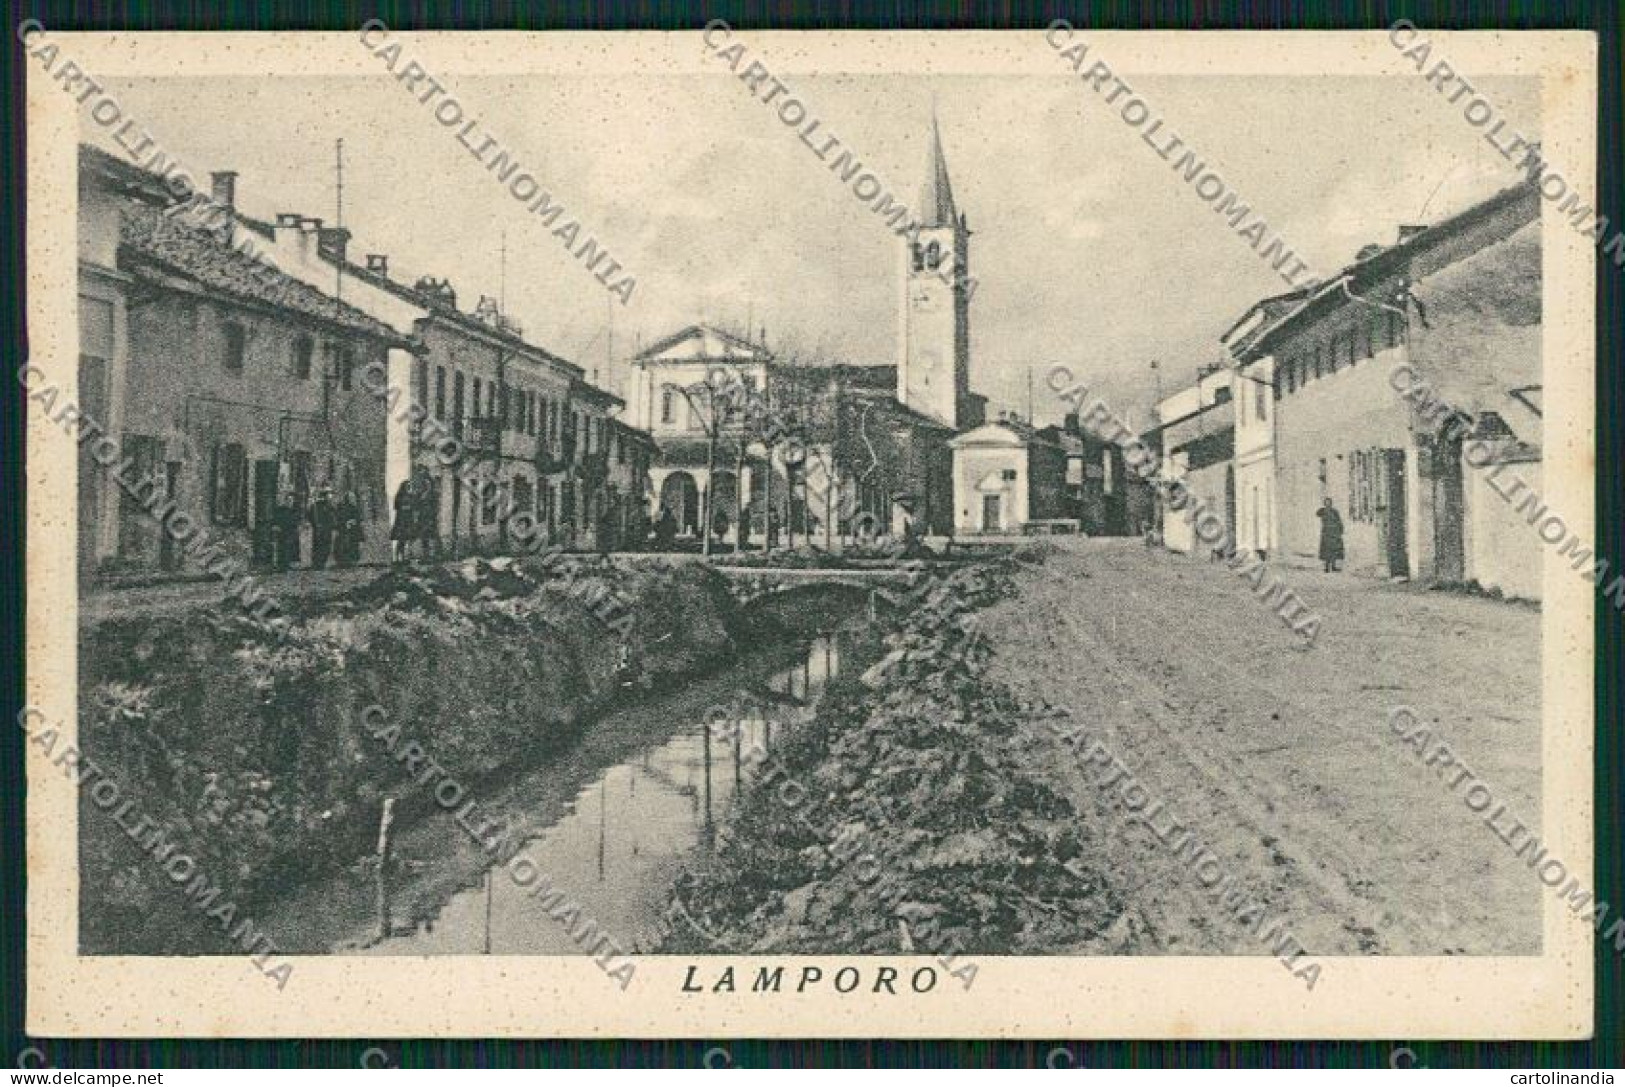 Vercelli Lamporo Cartolina QK5039 - Vercelli